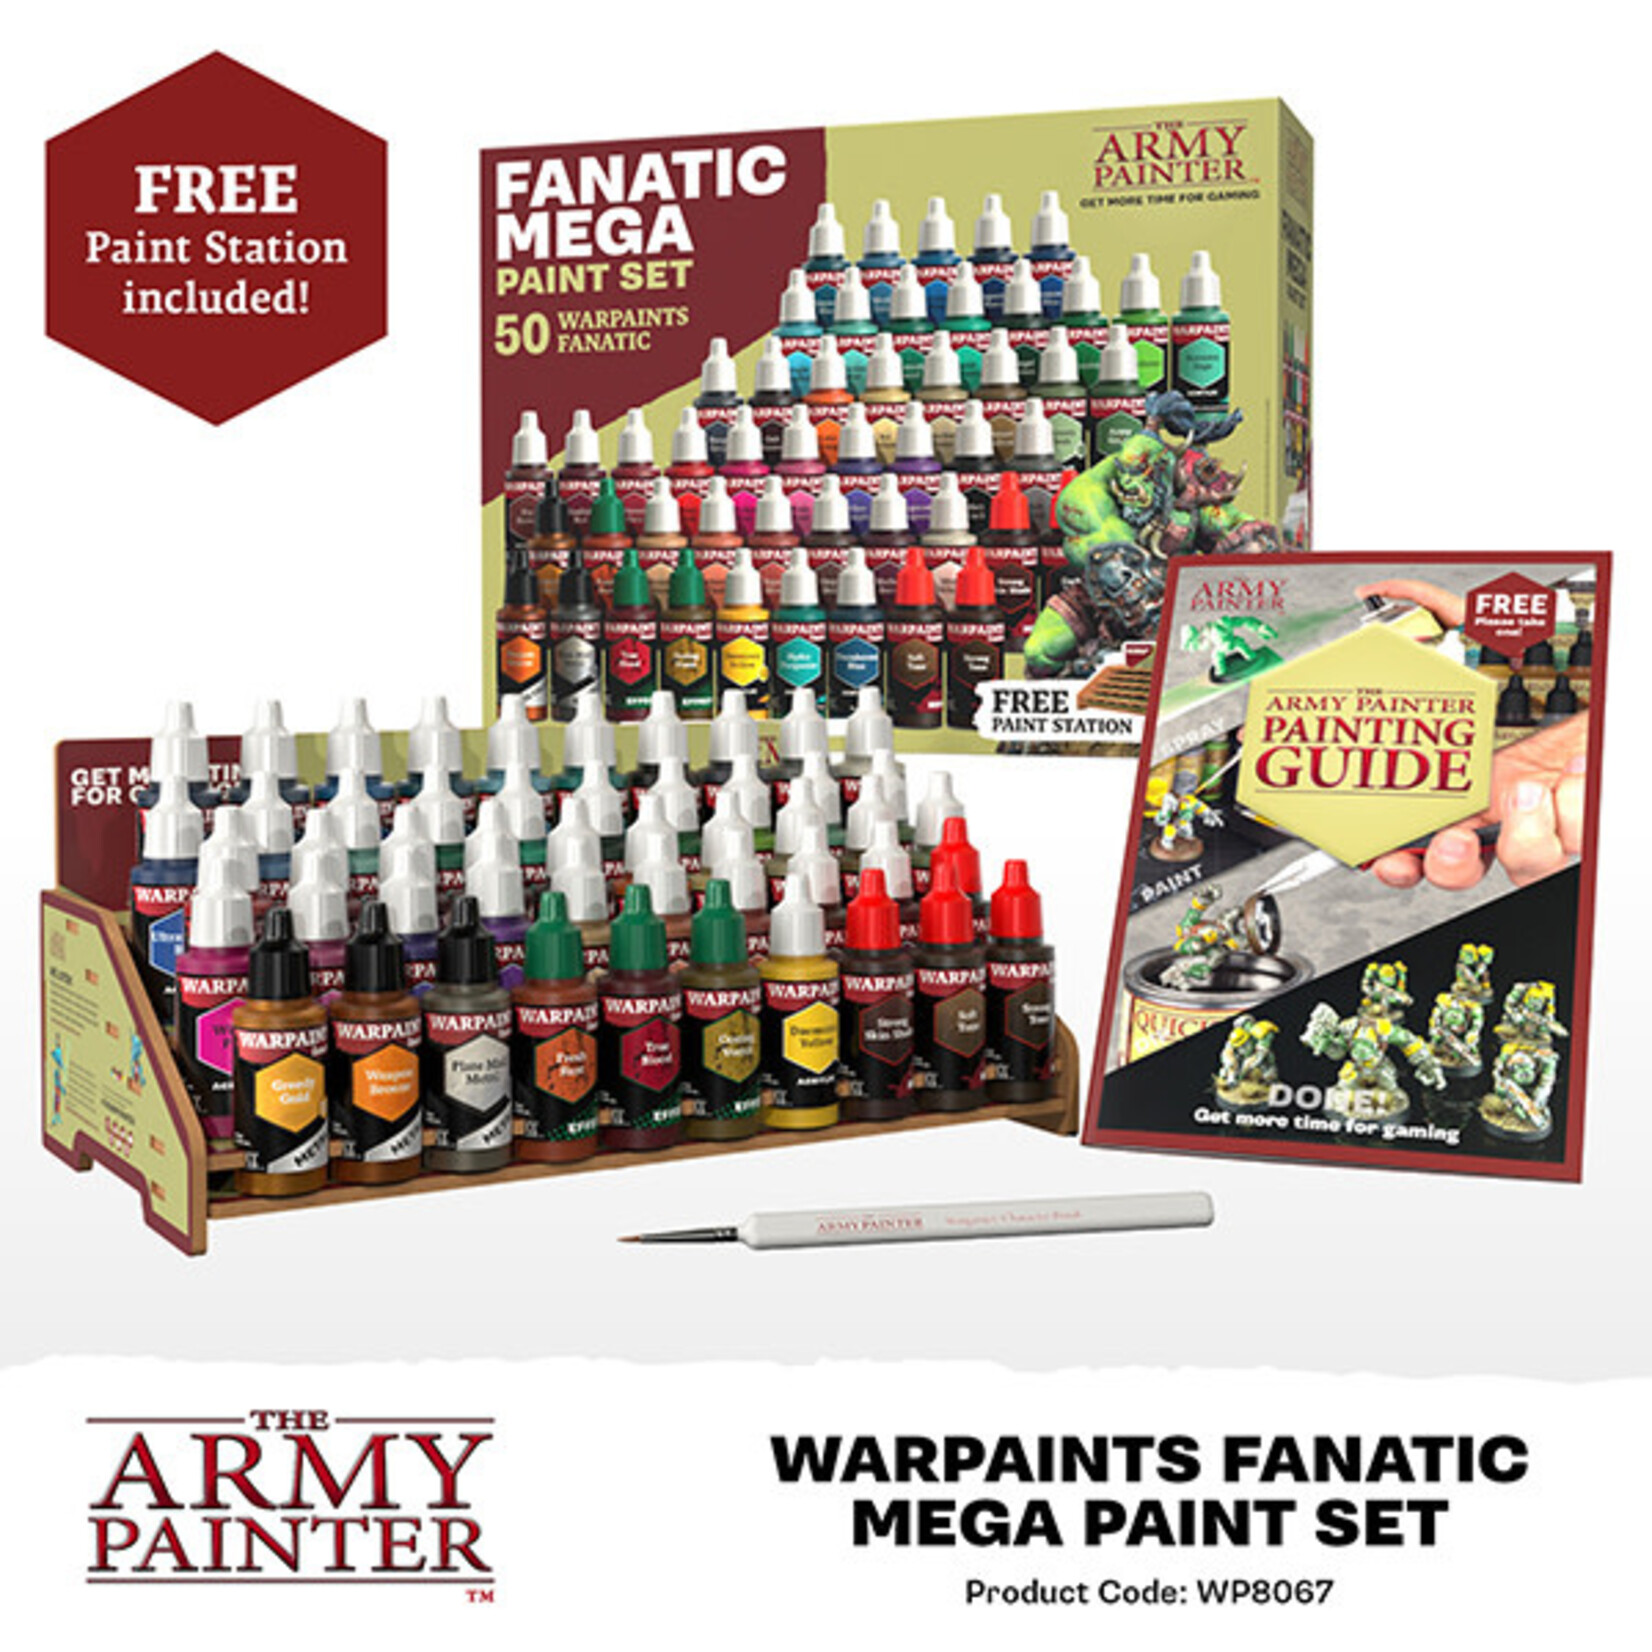 The Army Painter Warpaint: Fanatic Mega Paint Set